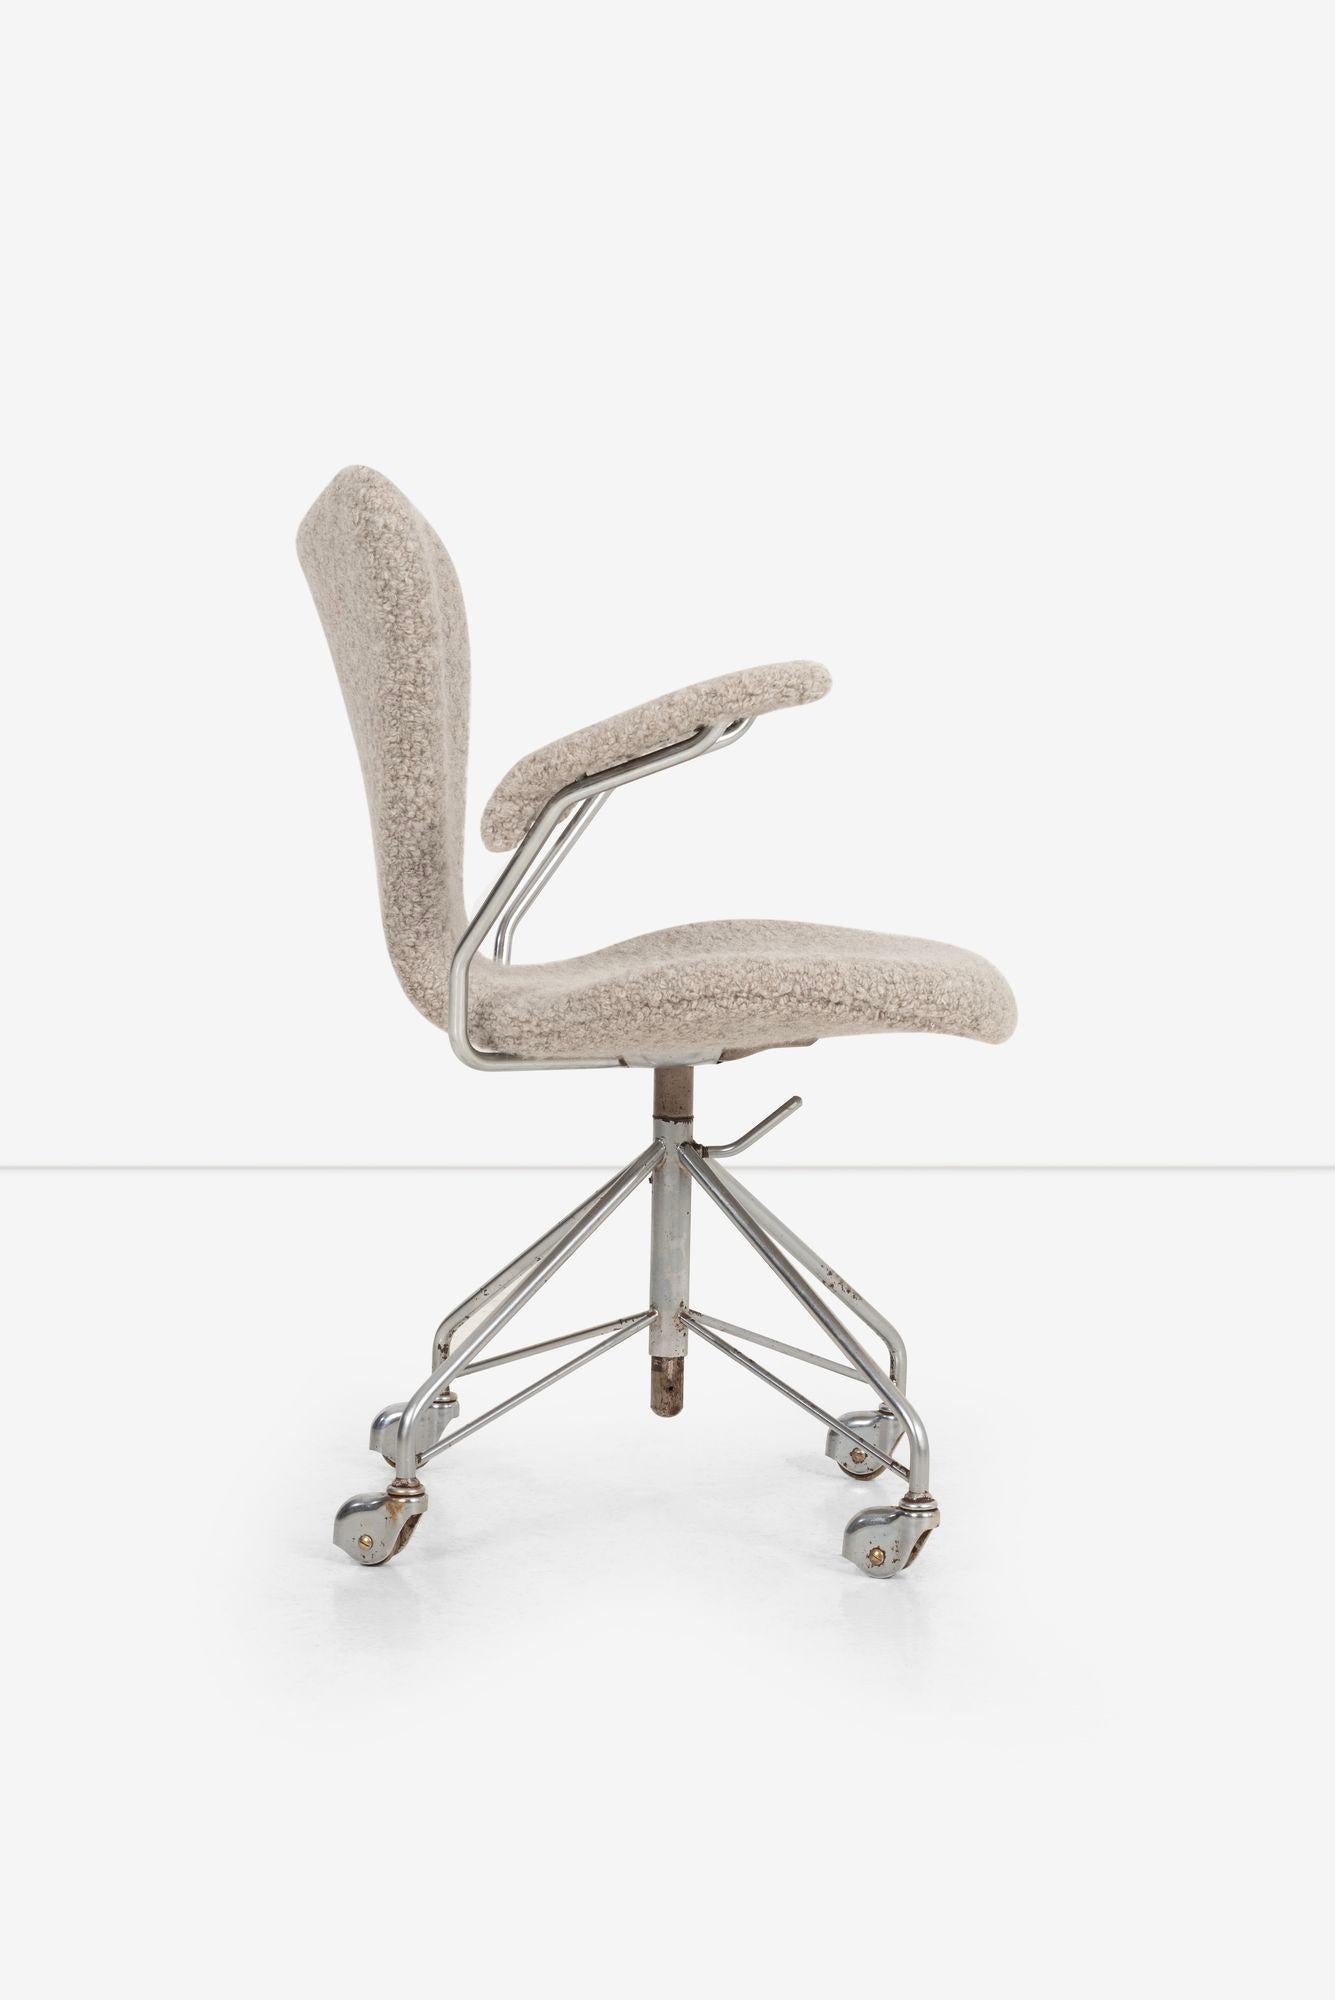 Metal Arne Jacobsen Sevener Desk Chair, model 3117 For Sale